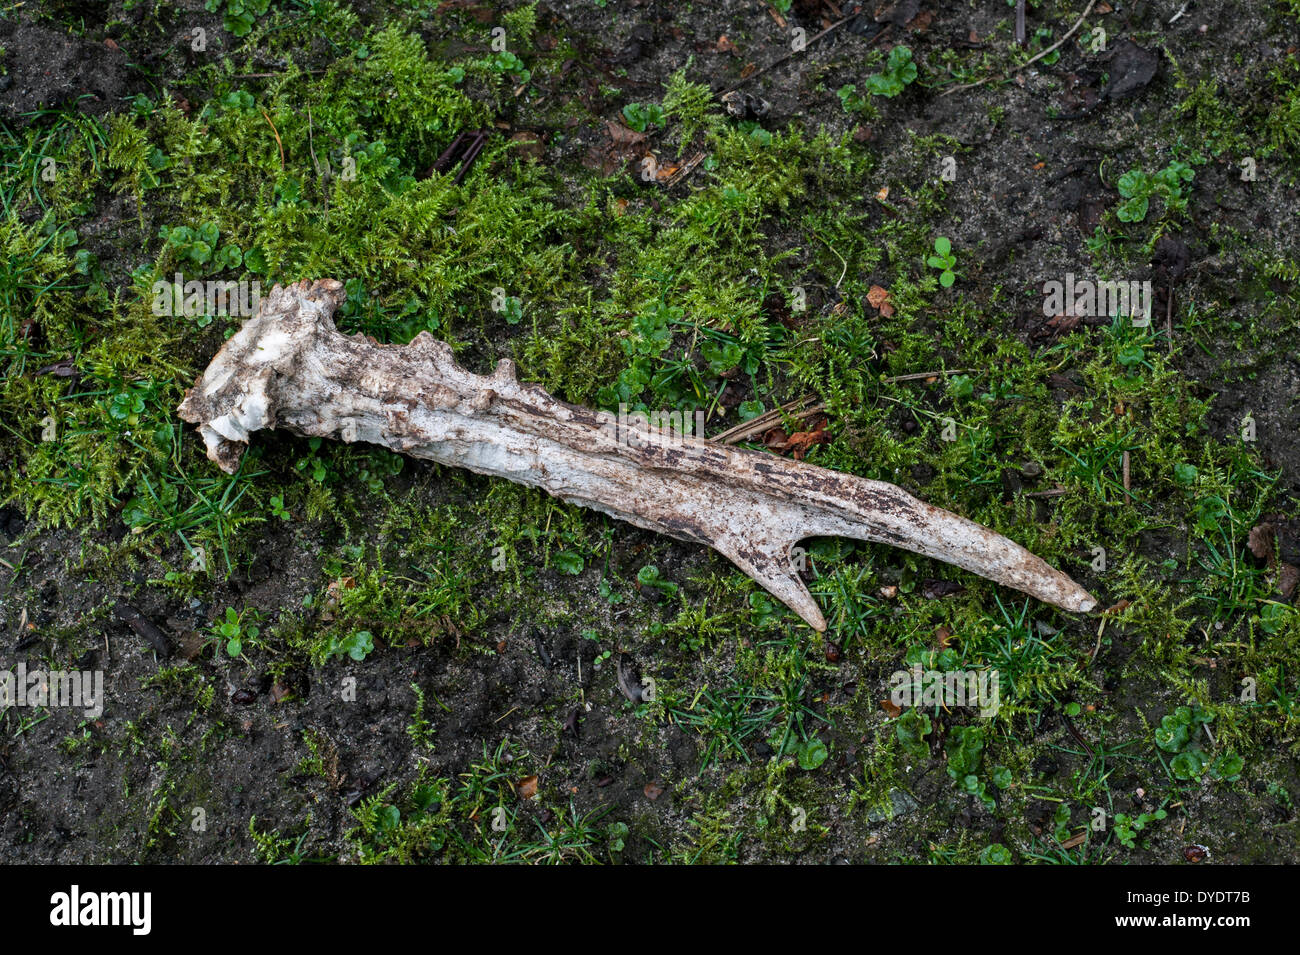 Unione il capriolo (Capreolus capreolus) capannone corna sul suolo della foresta che mostra segni di denti, rosicchiati dai roditori per i minerali Foto Stock